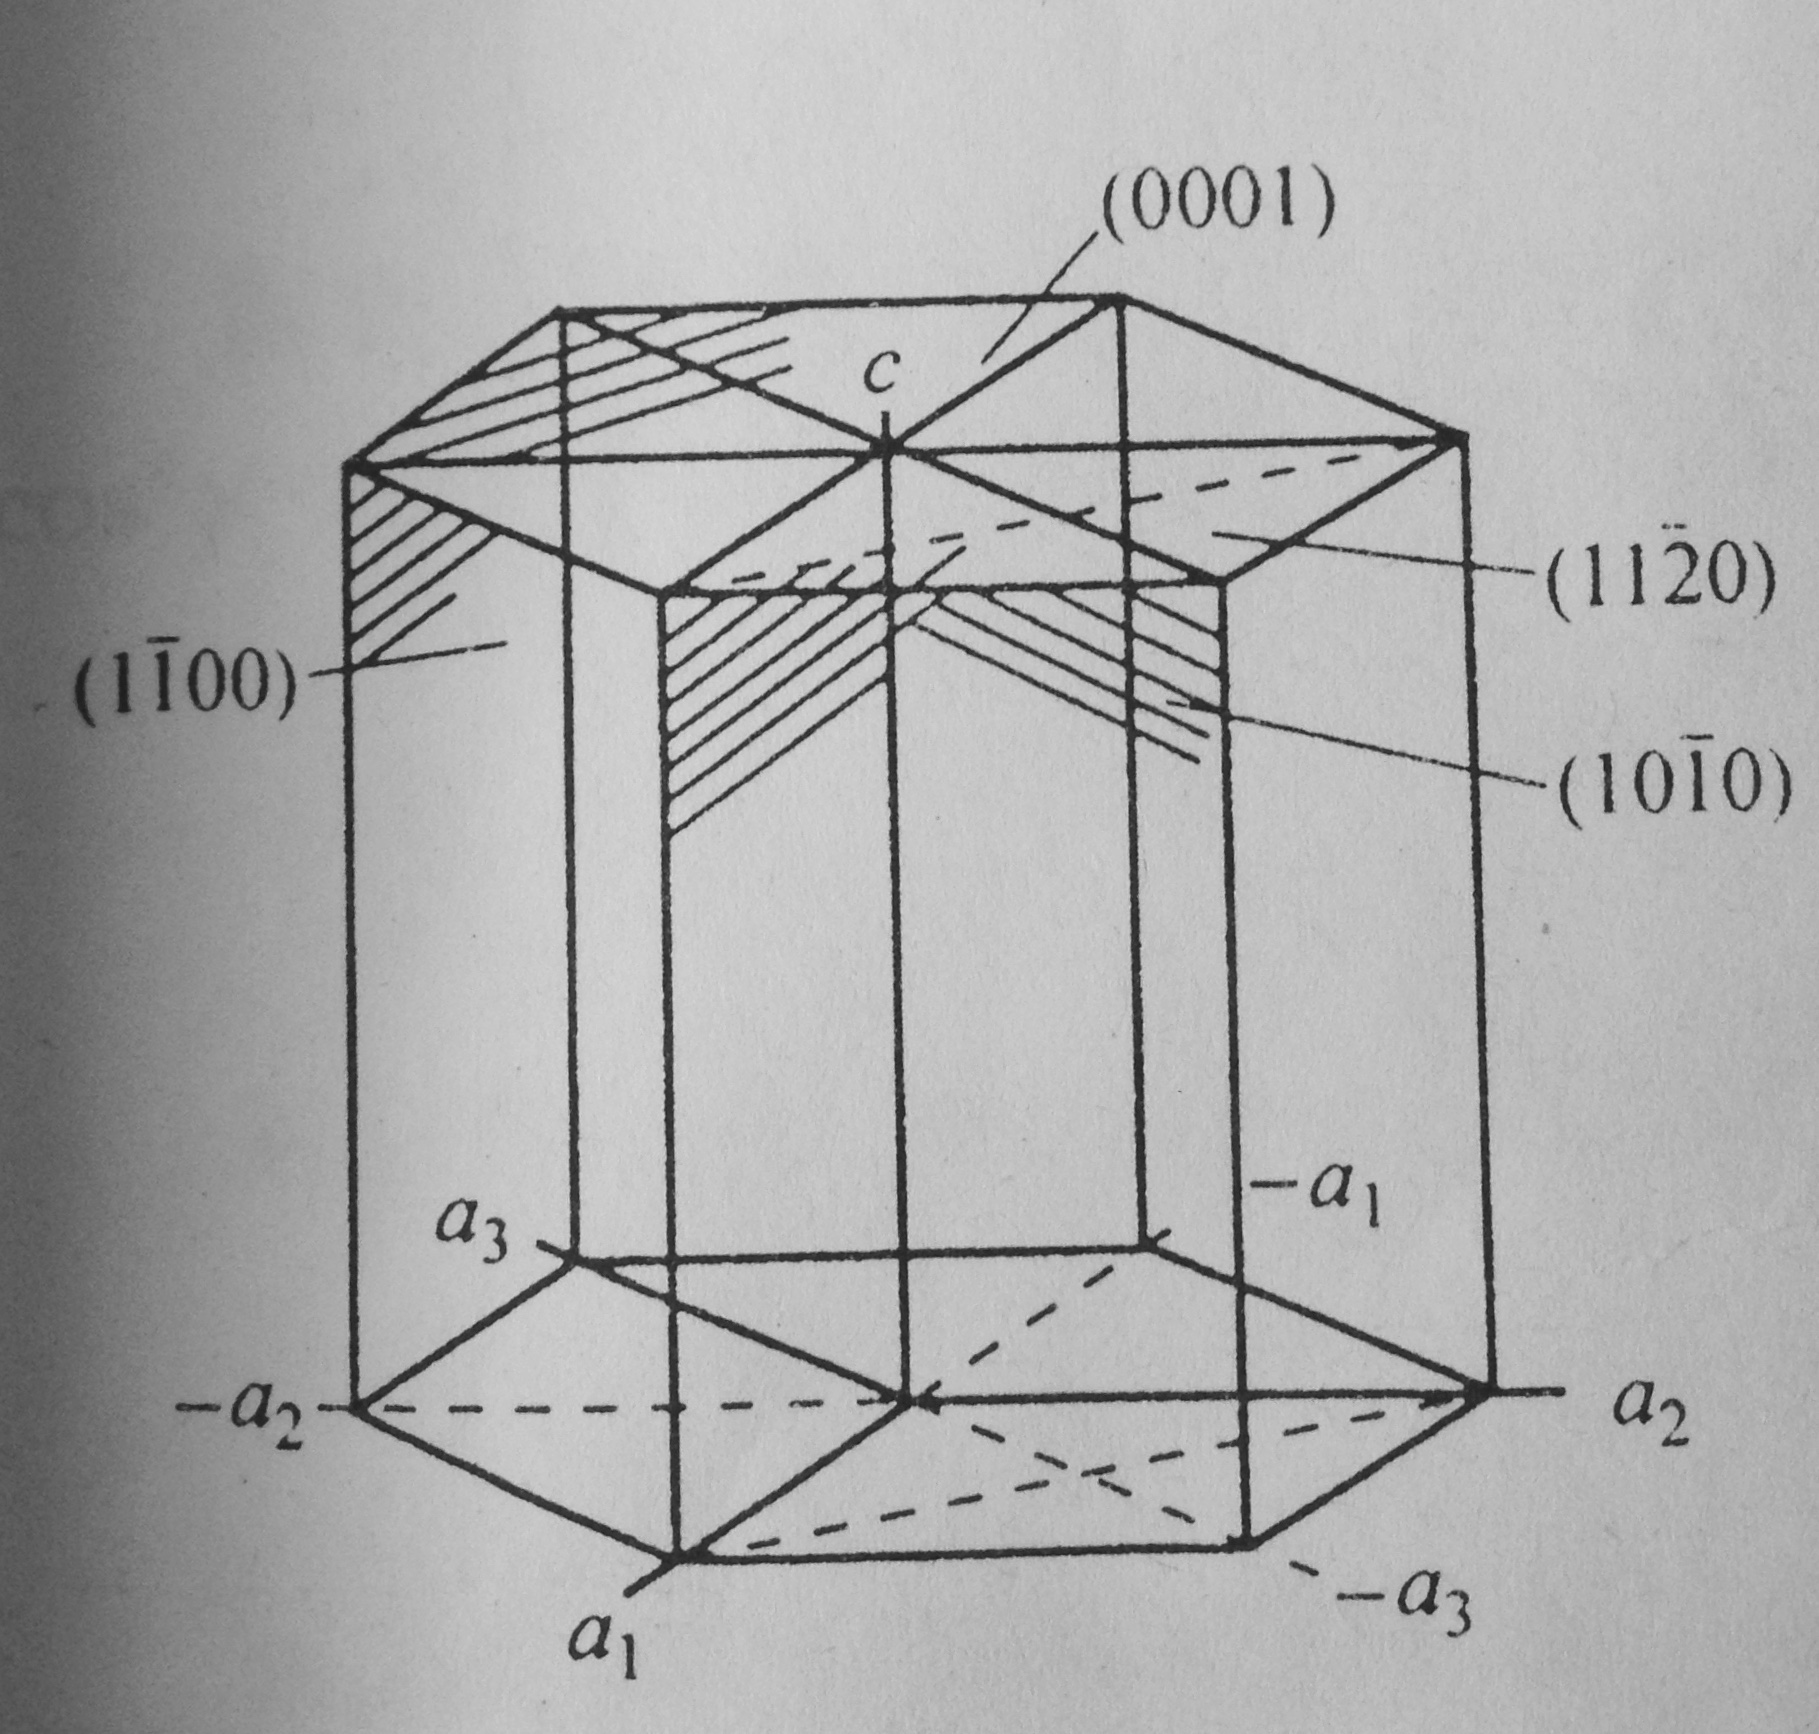 六方晶系的晶面间距如何推导